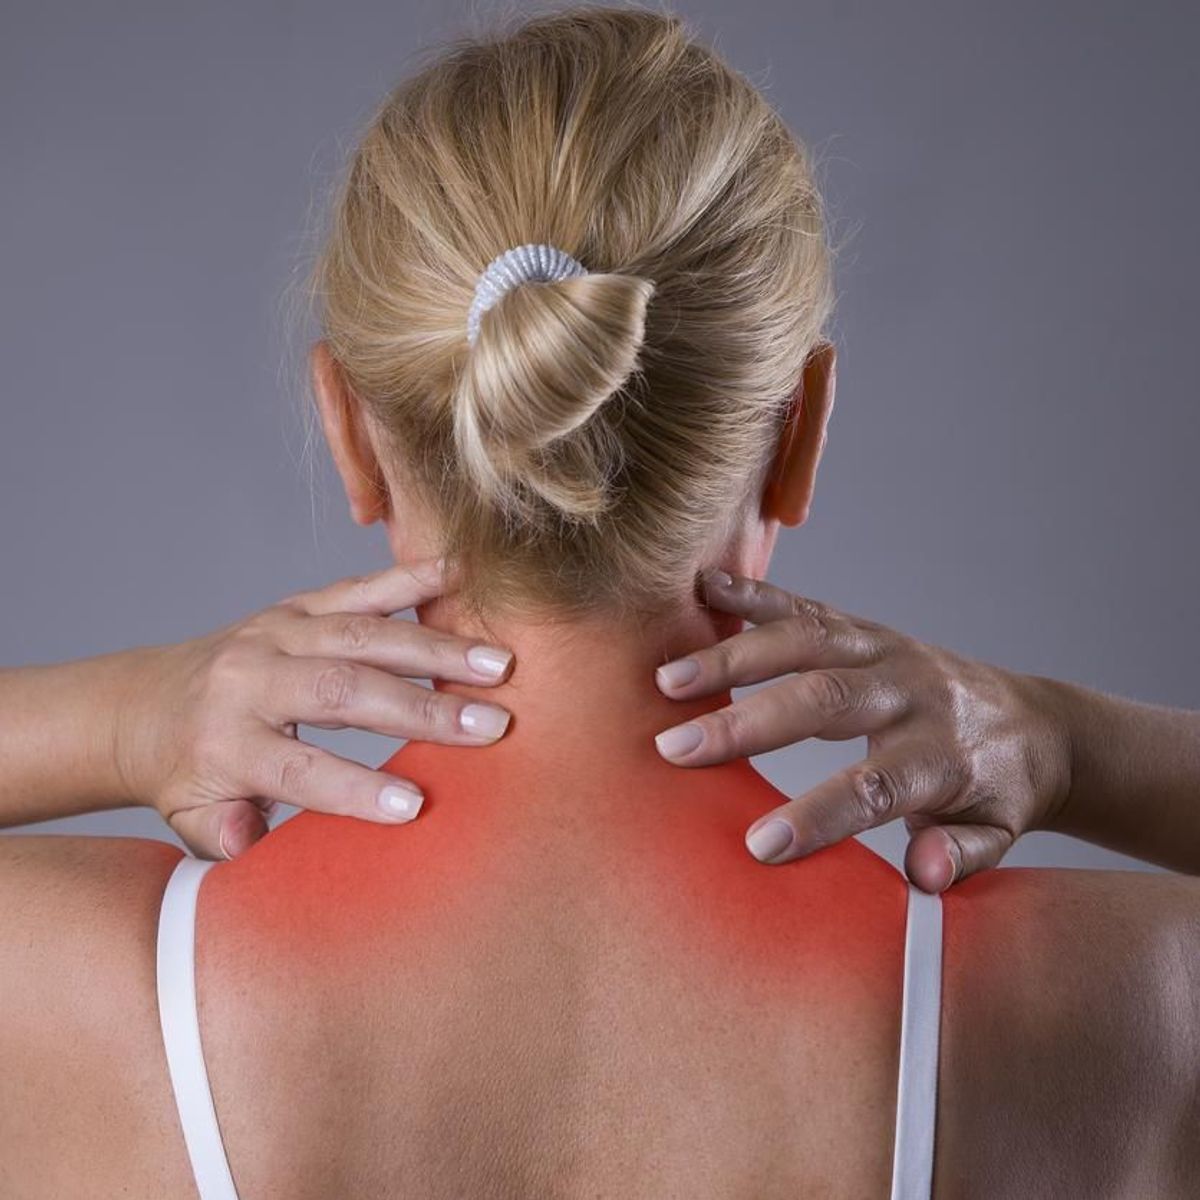 42 Symptômes de la fibromyalgie, que toute personne souffrant de douleurs musculaires devrait lire 